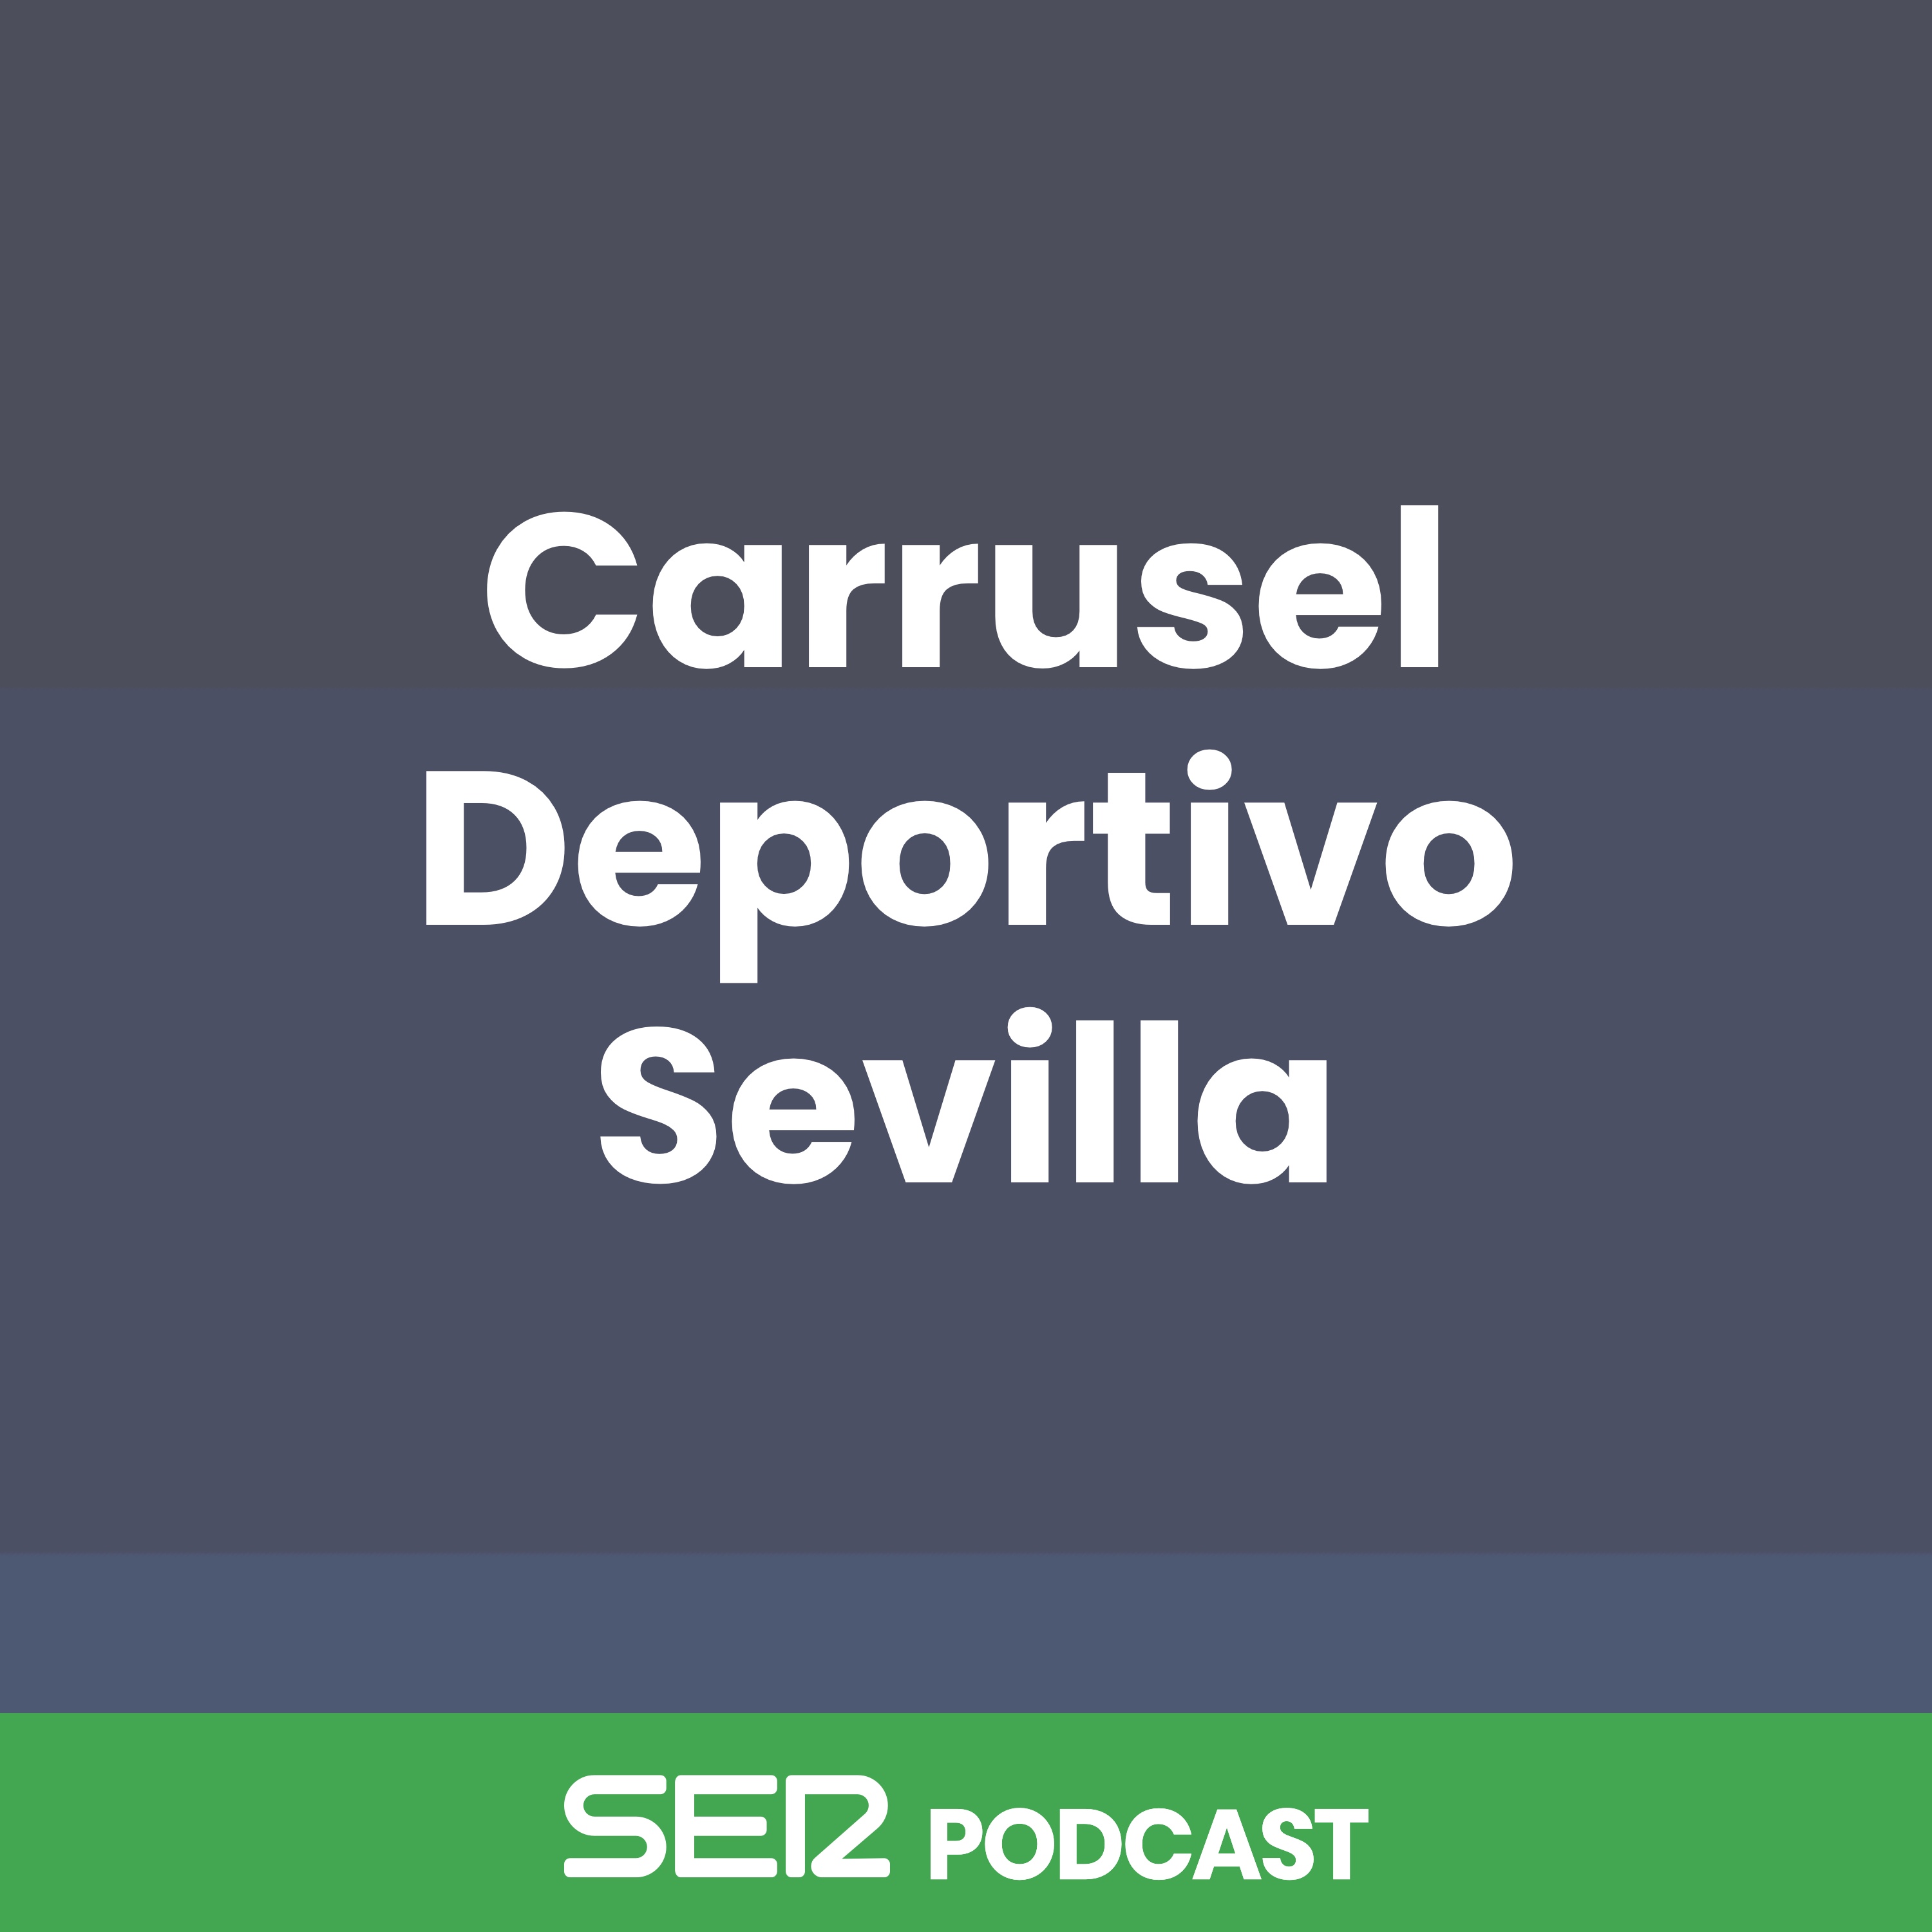 SER Escucha todos episodios de Carrusel Deportivo Sevilla